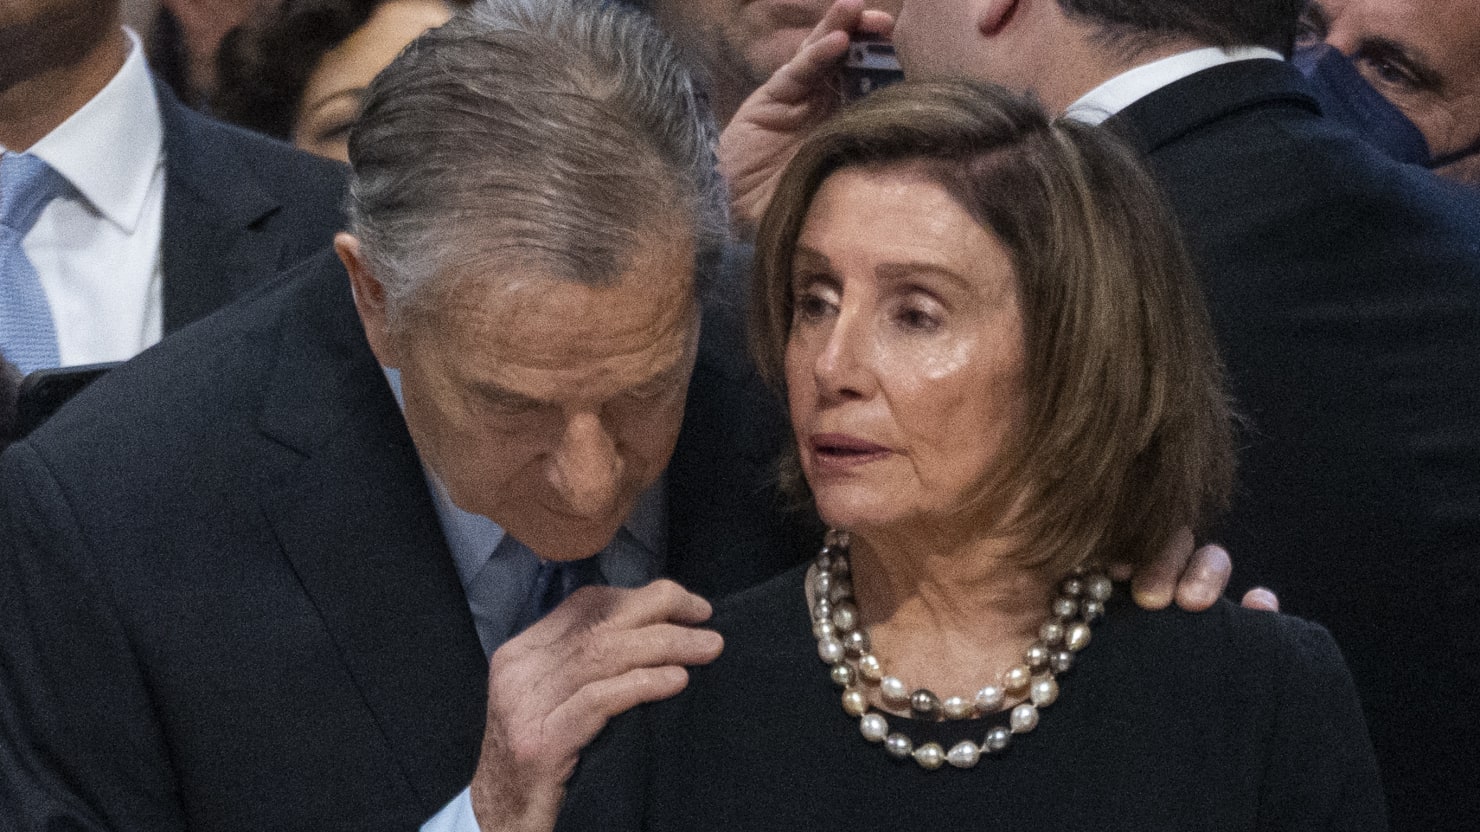 Nancy Pelosi “destrozada y traumatizada” por el ataque a su marido